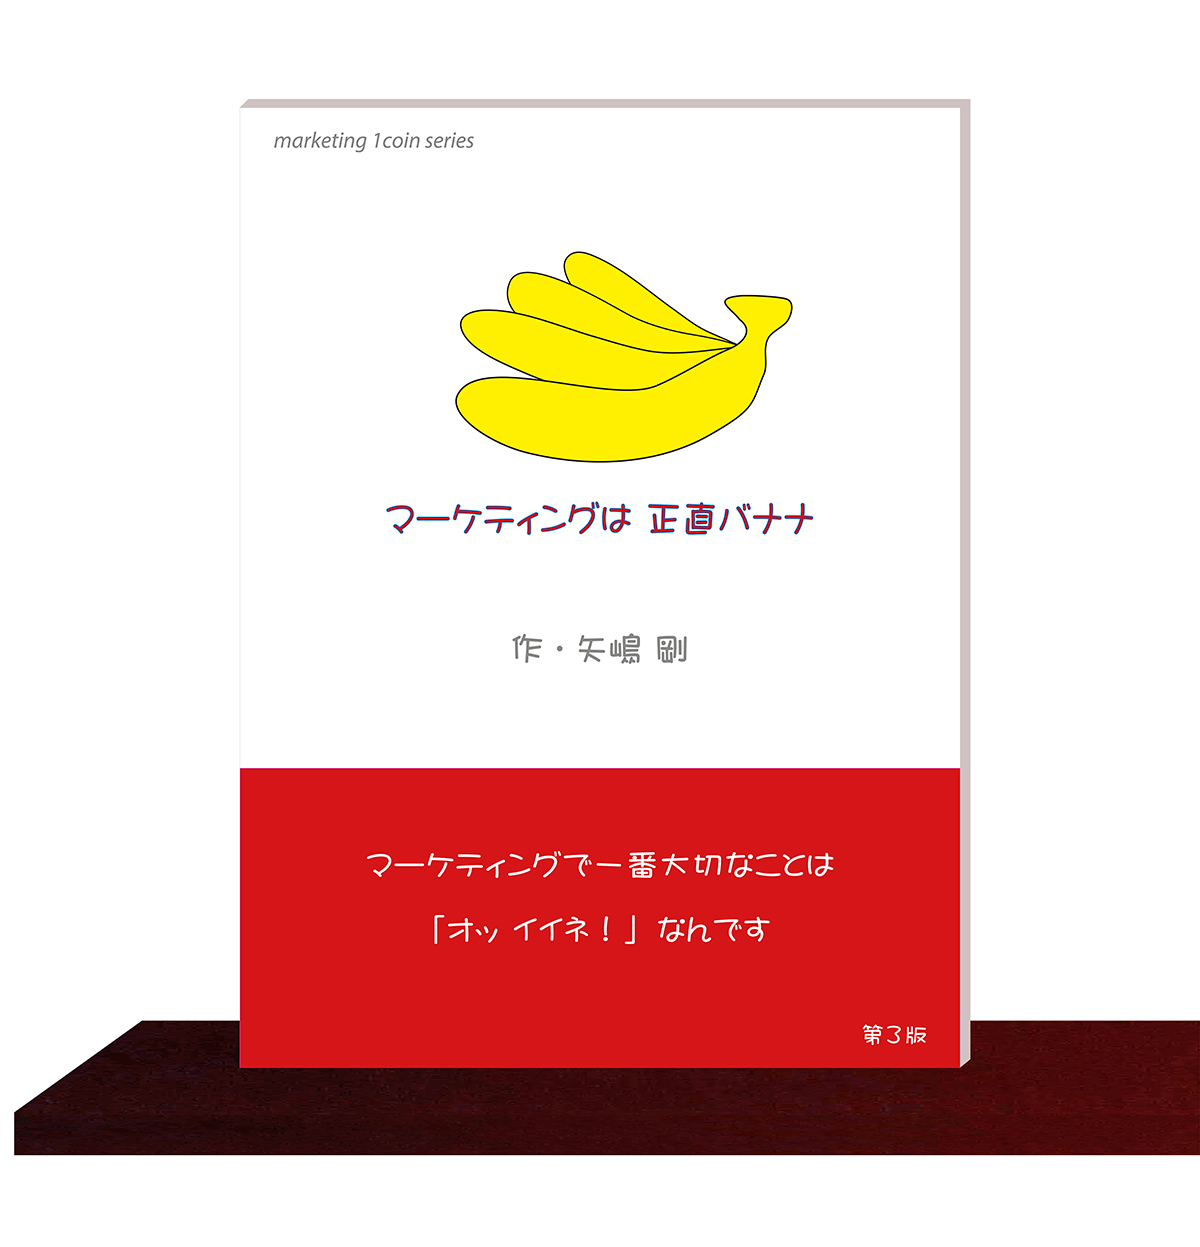 矢嶋剛・著。マーケティング・１コイン・シリーズ(1)『マーケティングは正直バナナ』（矢嶋ストーリー刊）が本棚の棚板の上に並んでいます。矢嶋ストーリー公式サイトのコツ本ページに掲載されている画像です。